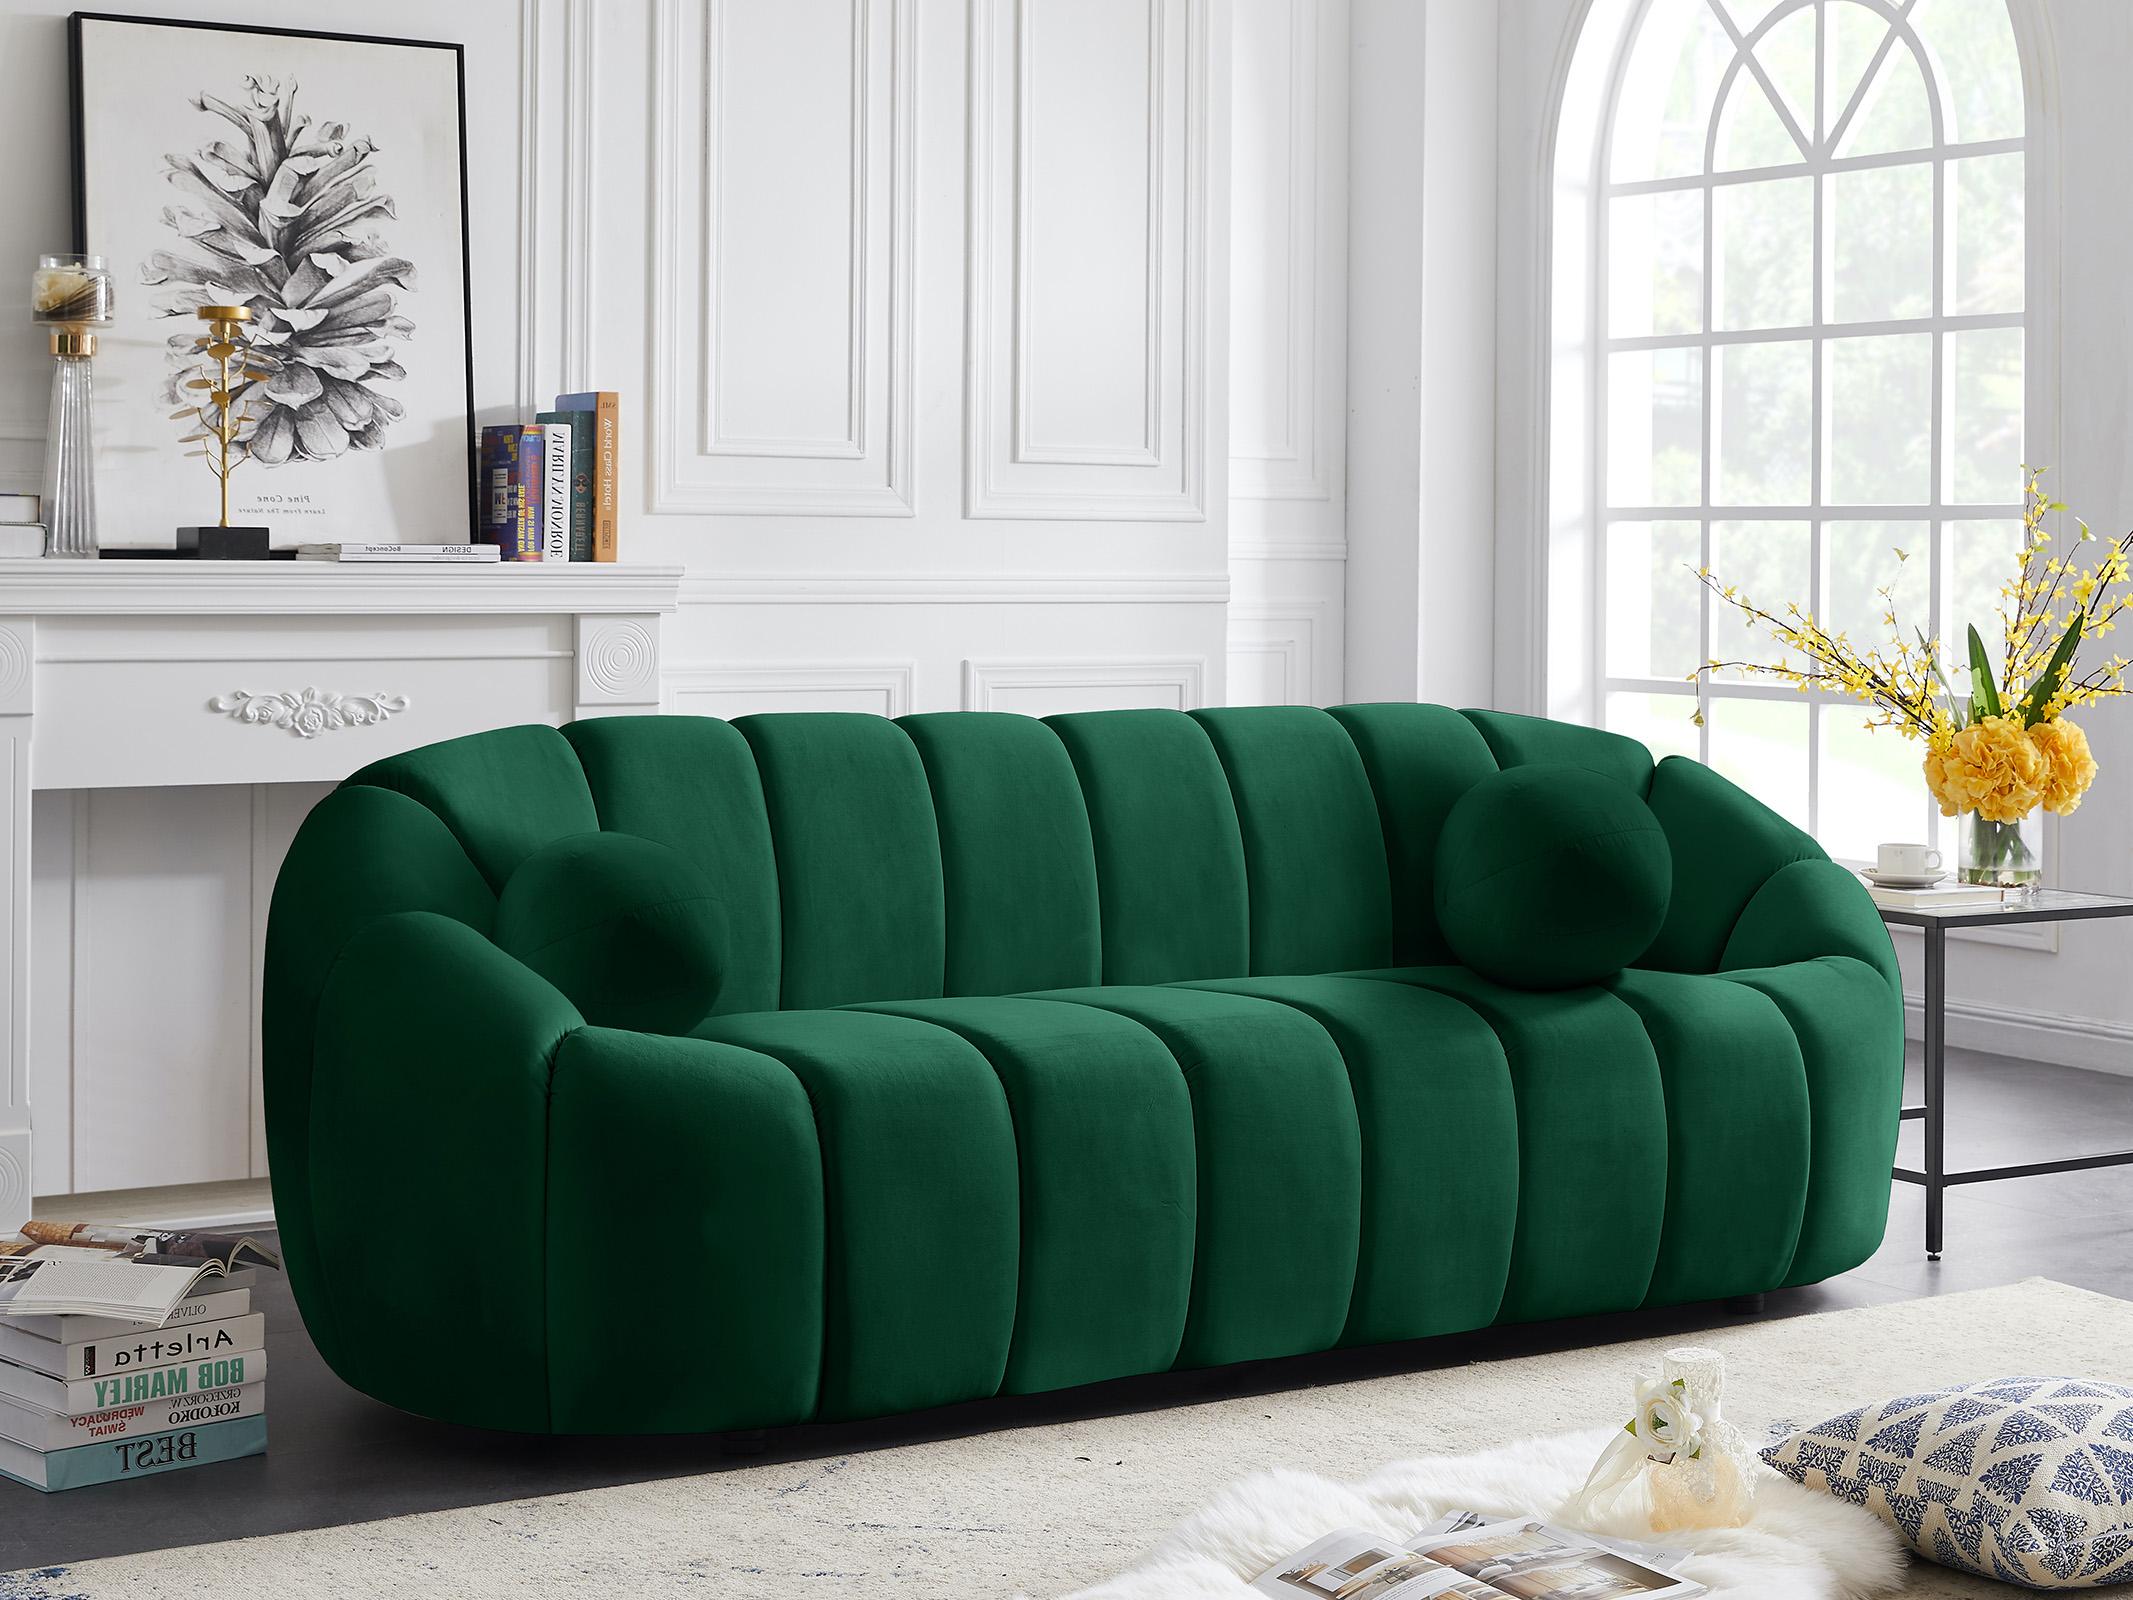 

    
Glam GREEN Velvet Channel Tufted Sofa Set 3Pcs ELIJAH 613Green Meridian Modern
